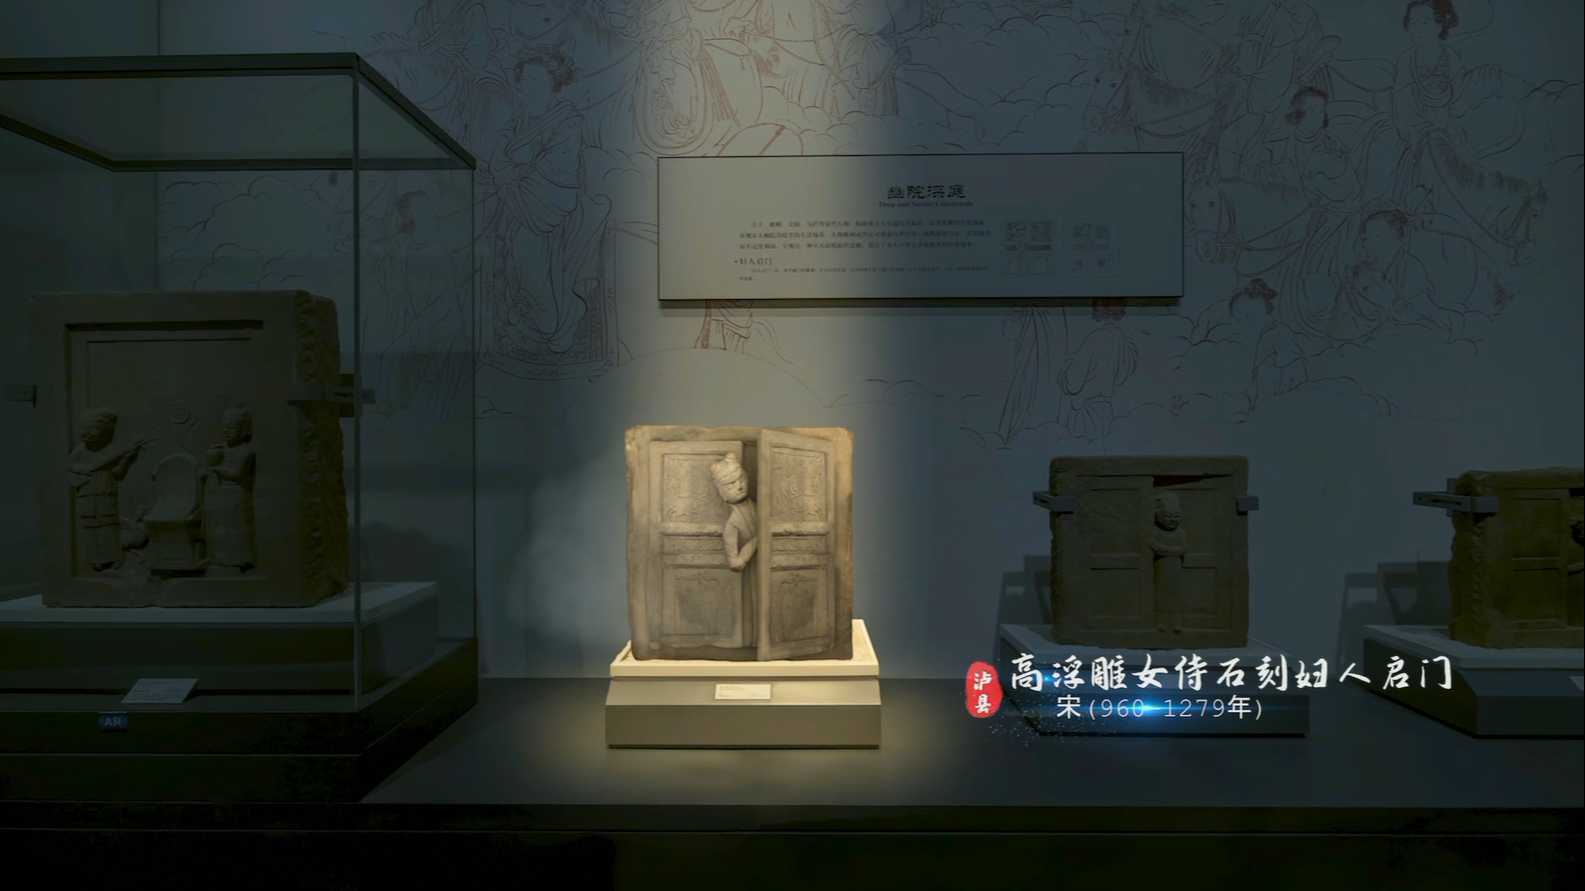 《宋代石刻博物馆选秀夜》-四川泸州泸县宋代石刻博物馆